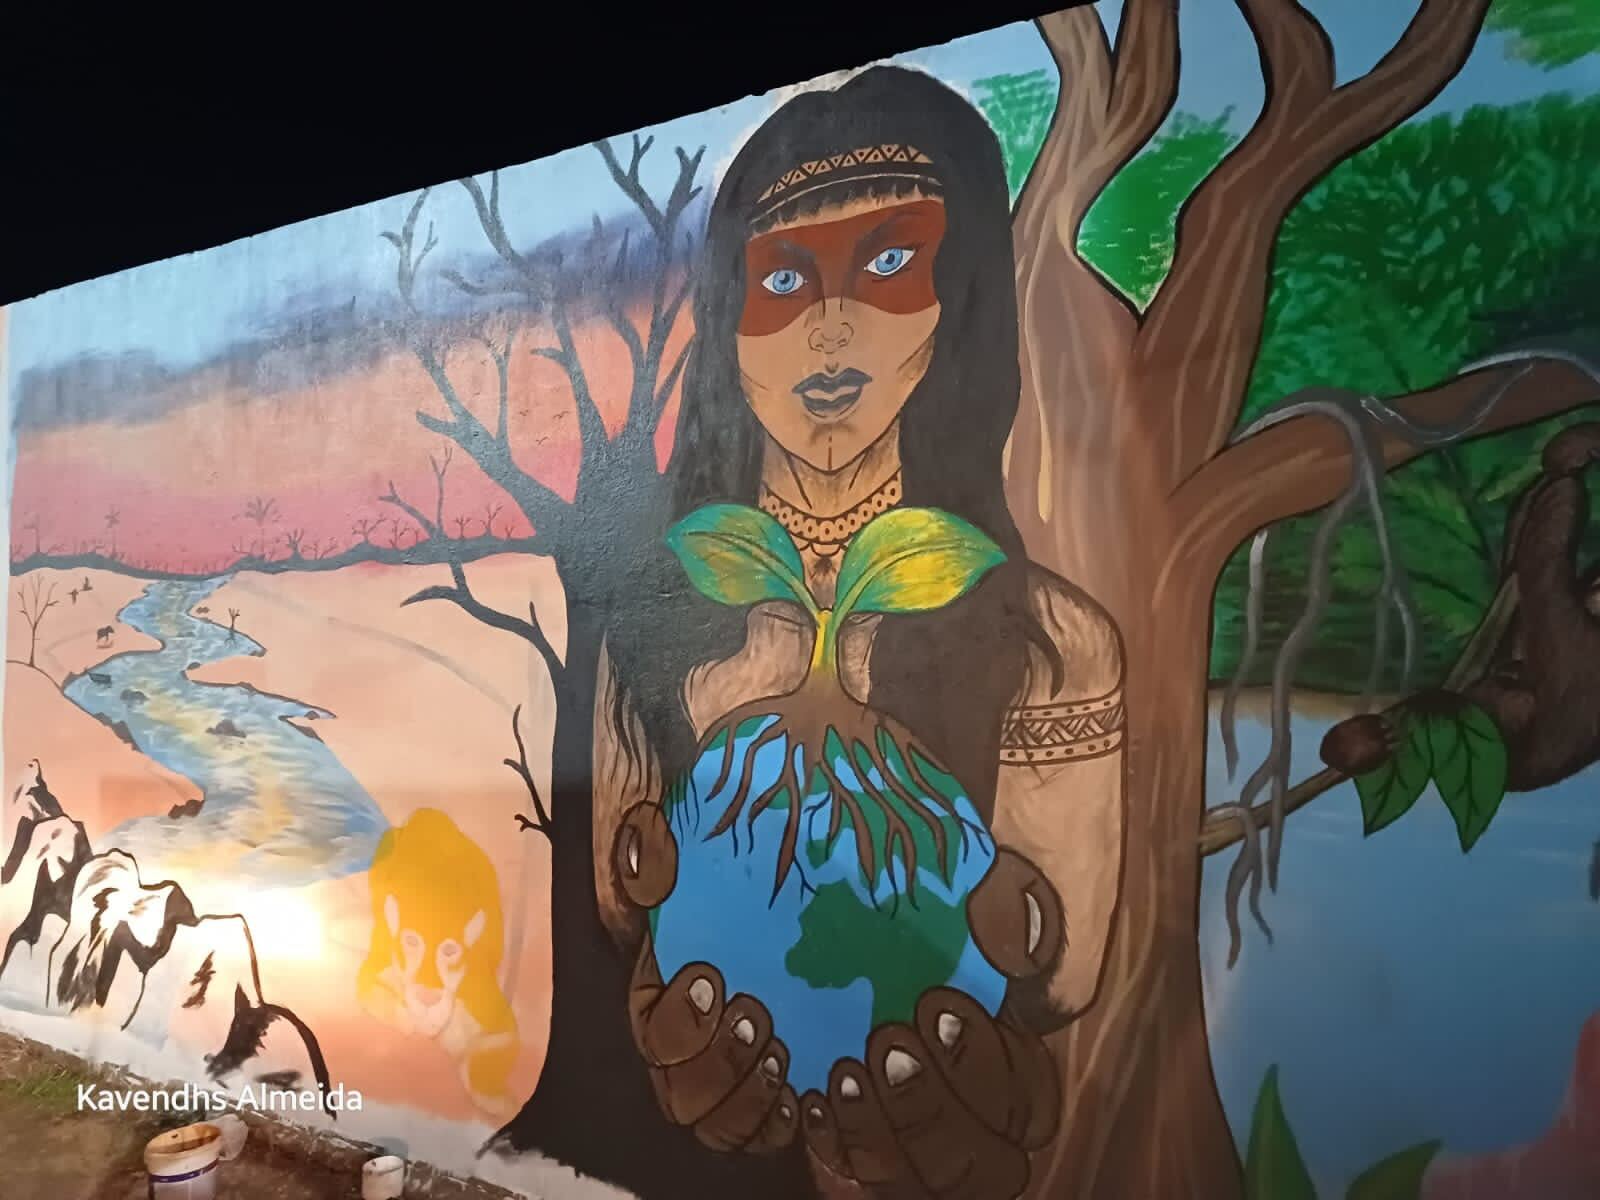 Silves, Brasil, 26 de outubro: comunidades pintaram murais e plantaram árvores em Silves (AM), em preparação para as ações da Renova Já! Eles lutam contra o gás fóssil na Amazônia. Foto: Kavendhs Almeida